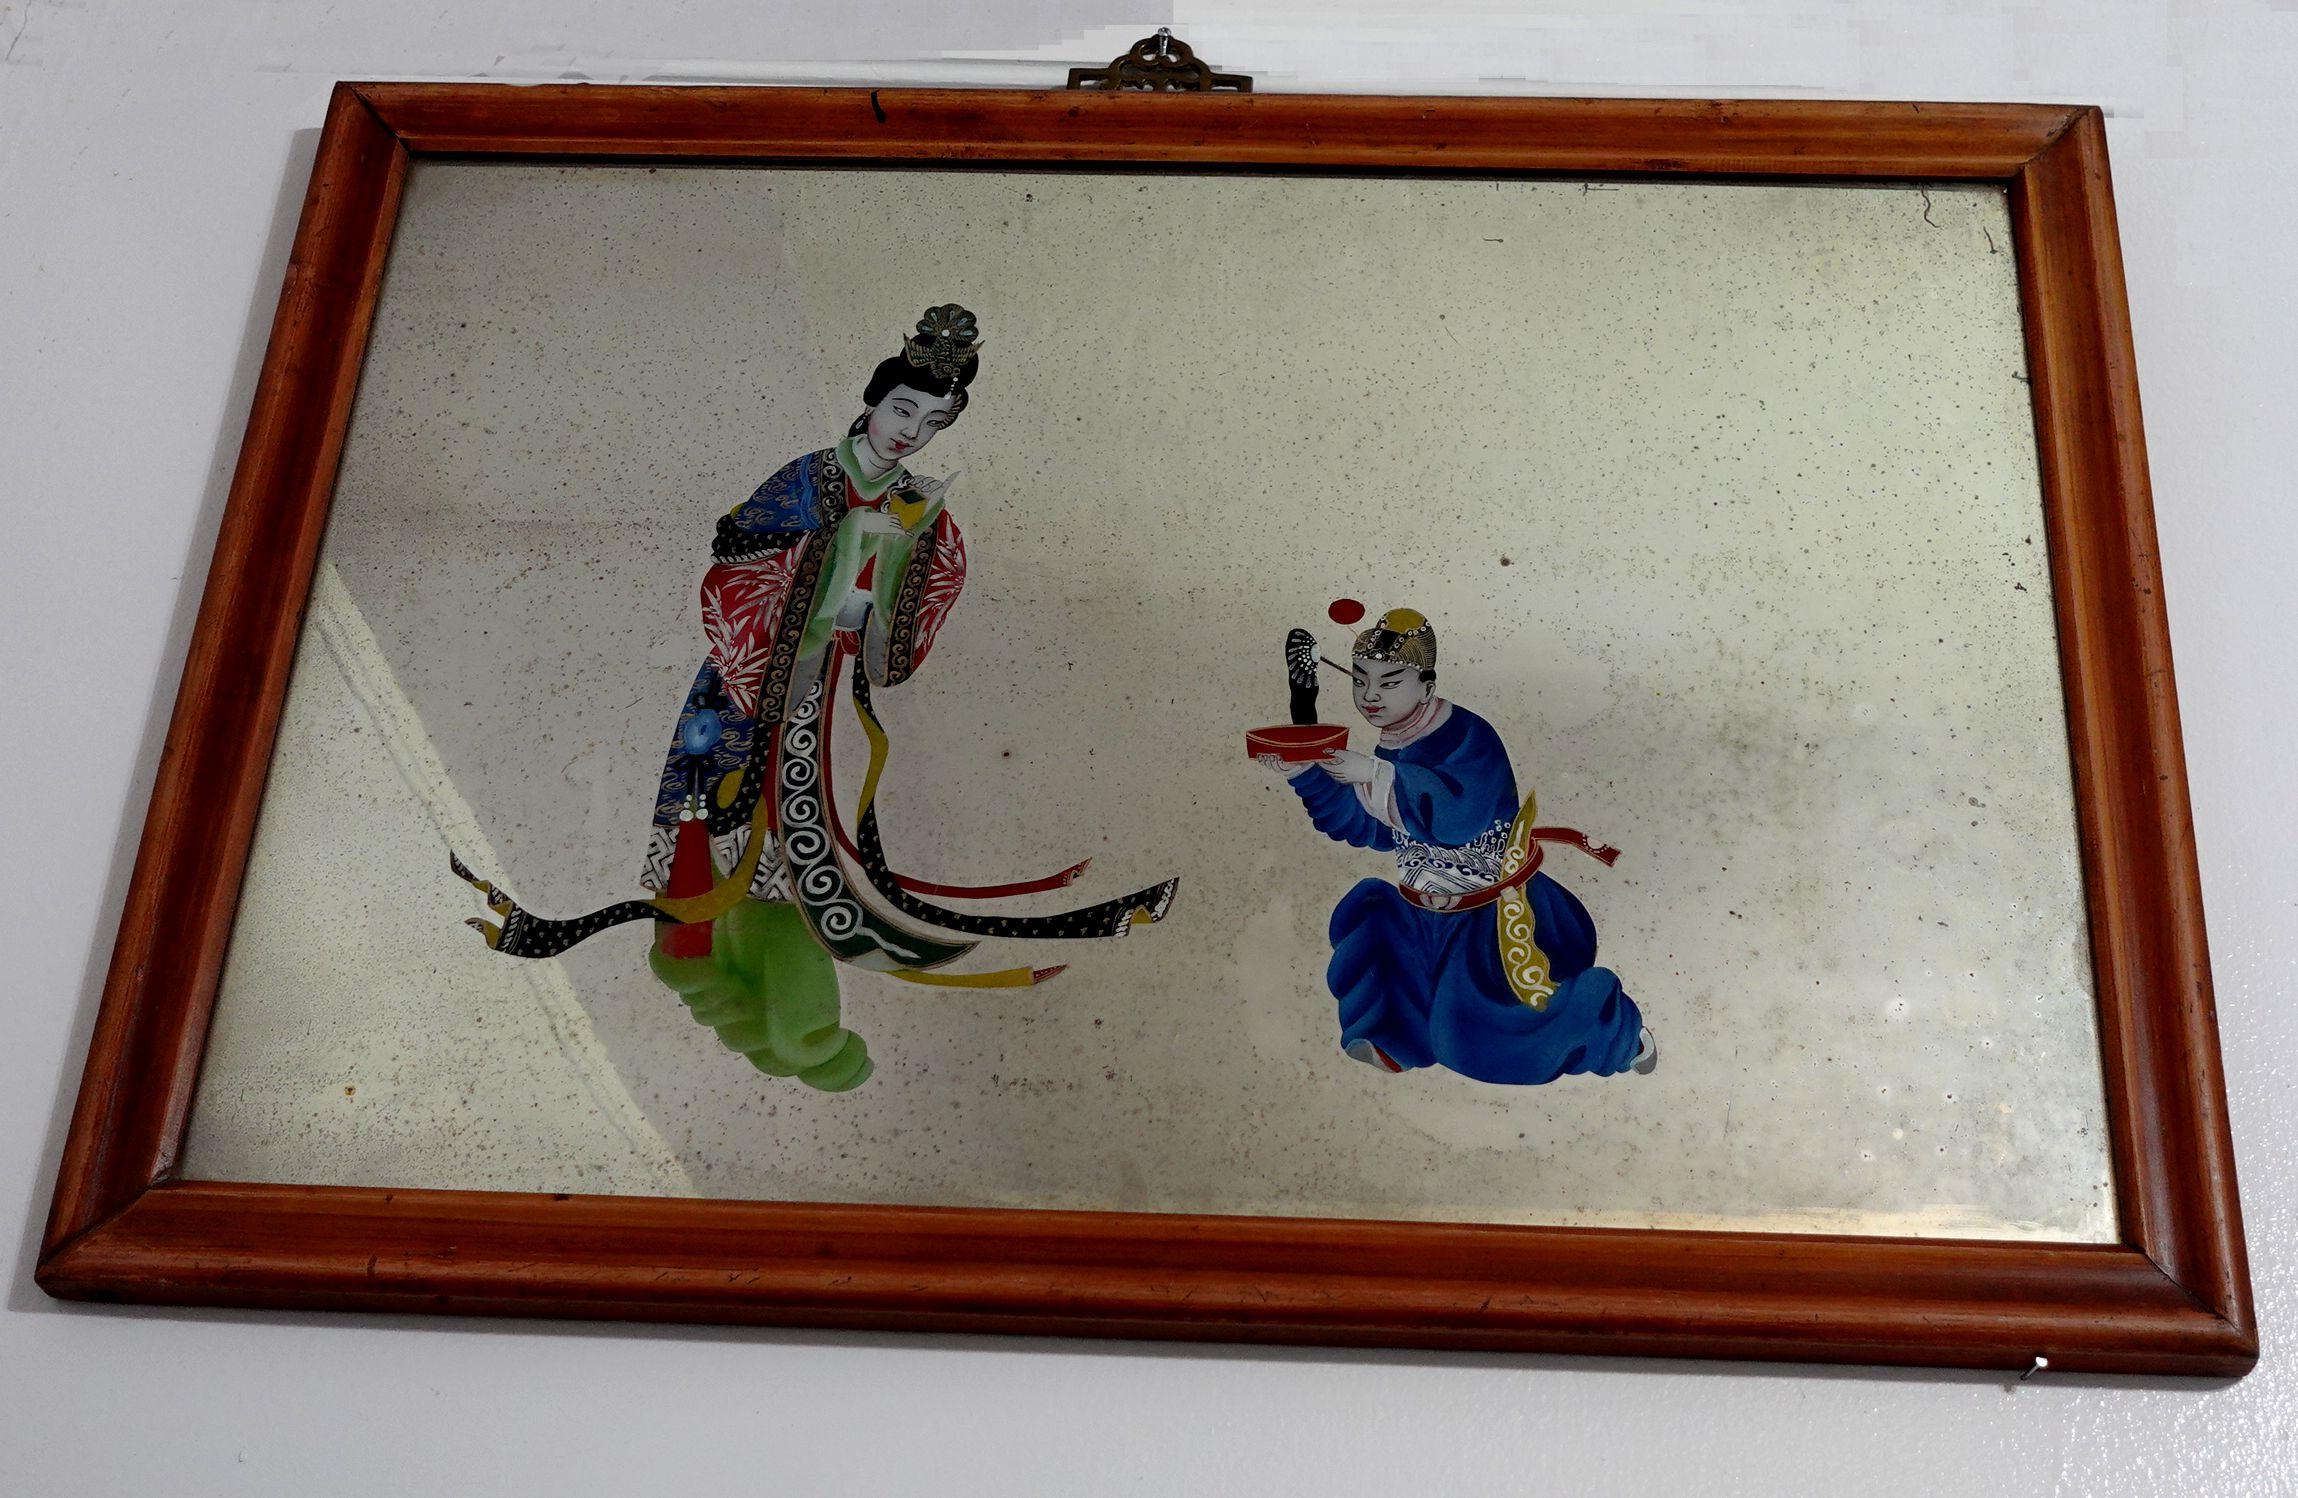 Une grande et charmante peinture d'exportation chinoise du 19ème siècle sur miroir, représentant un homme demandant le mariage. 

Les tableaux en verre inversé sont devenus à la mode au 18e siècle. Les panneaux de verre étaient envoyés d'Europe en